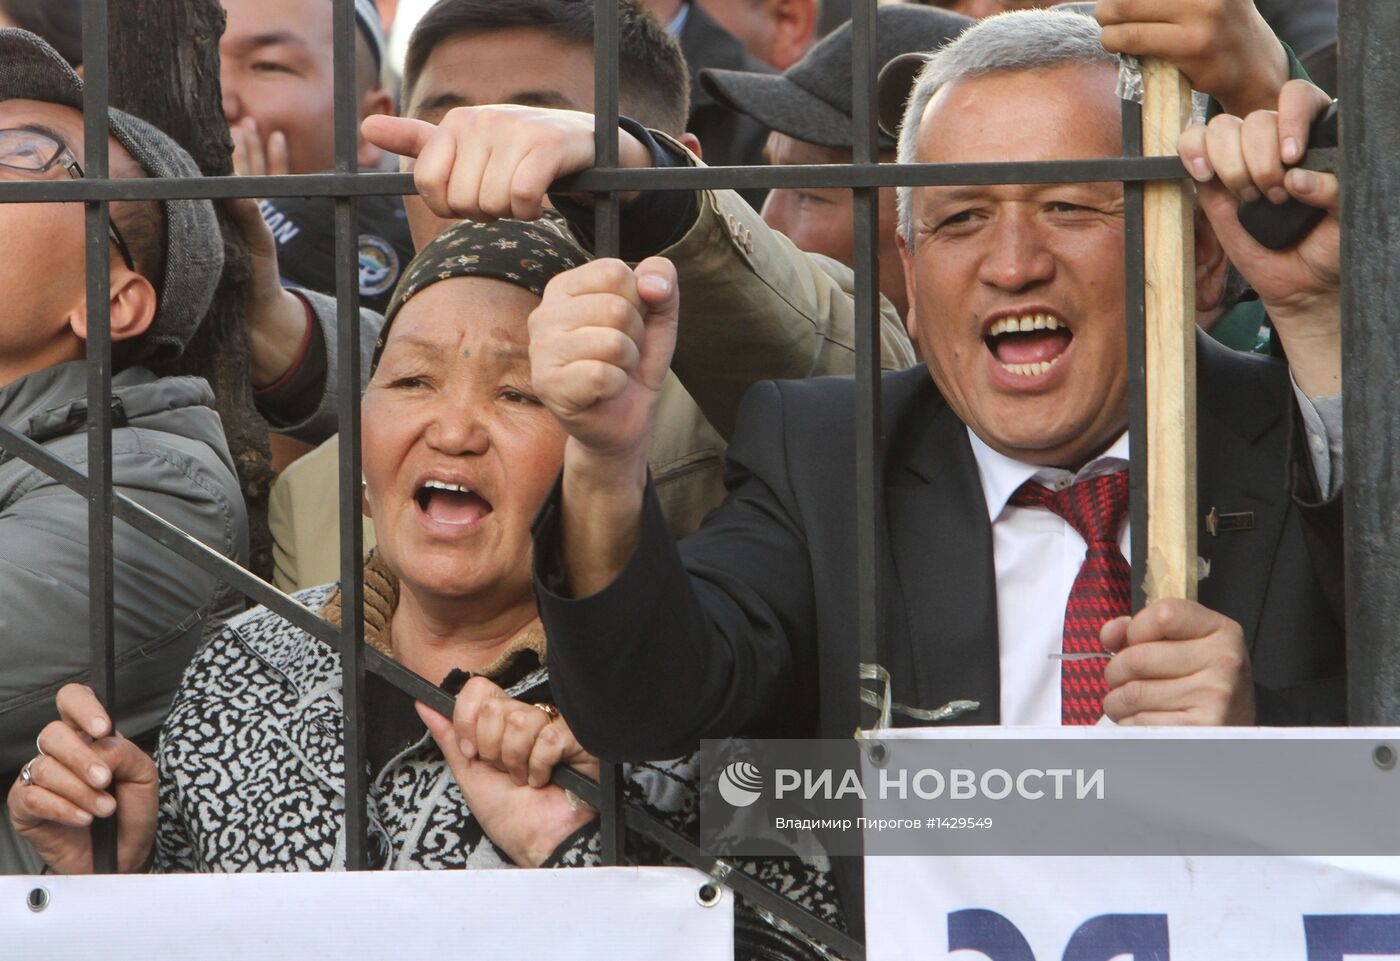 Вынесение приговора депутатам фракции "Ата-Журт" в Киргизии